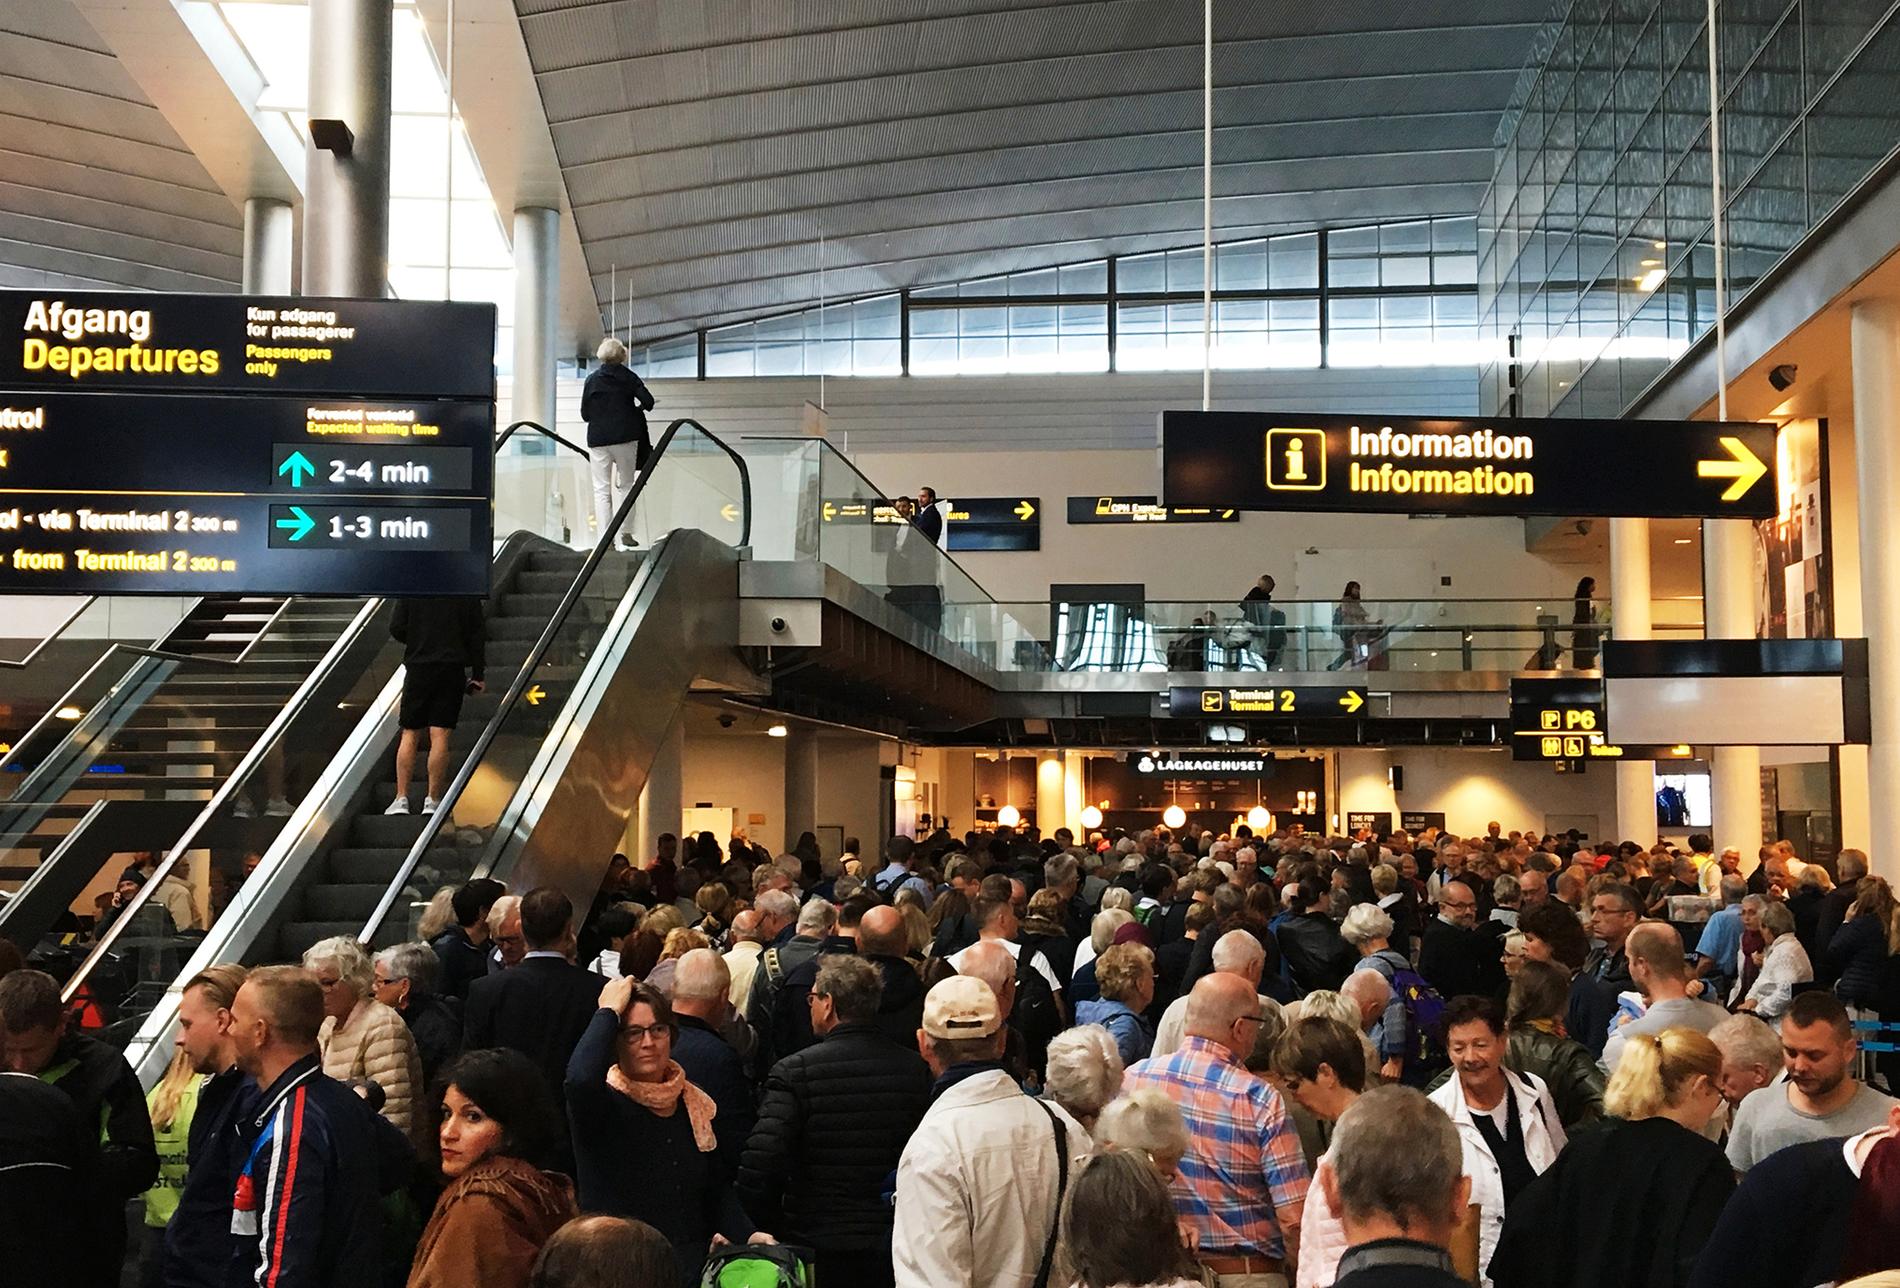 Kastrups terminal 2 avspärrad när misstänkt bagage undersöks. Folk trängs i terminal 3 som fortfarande är öppen. 